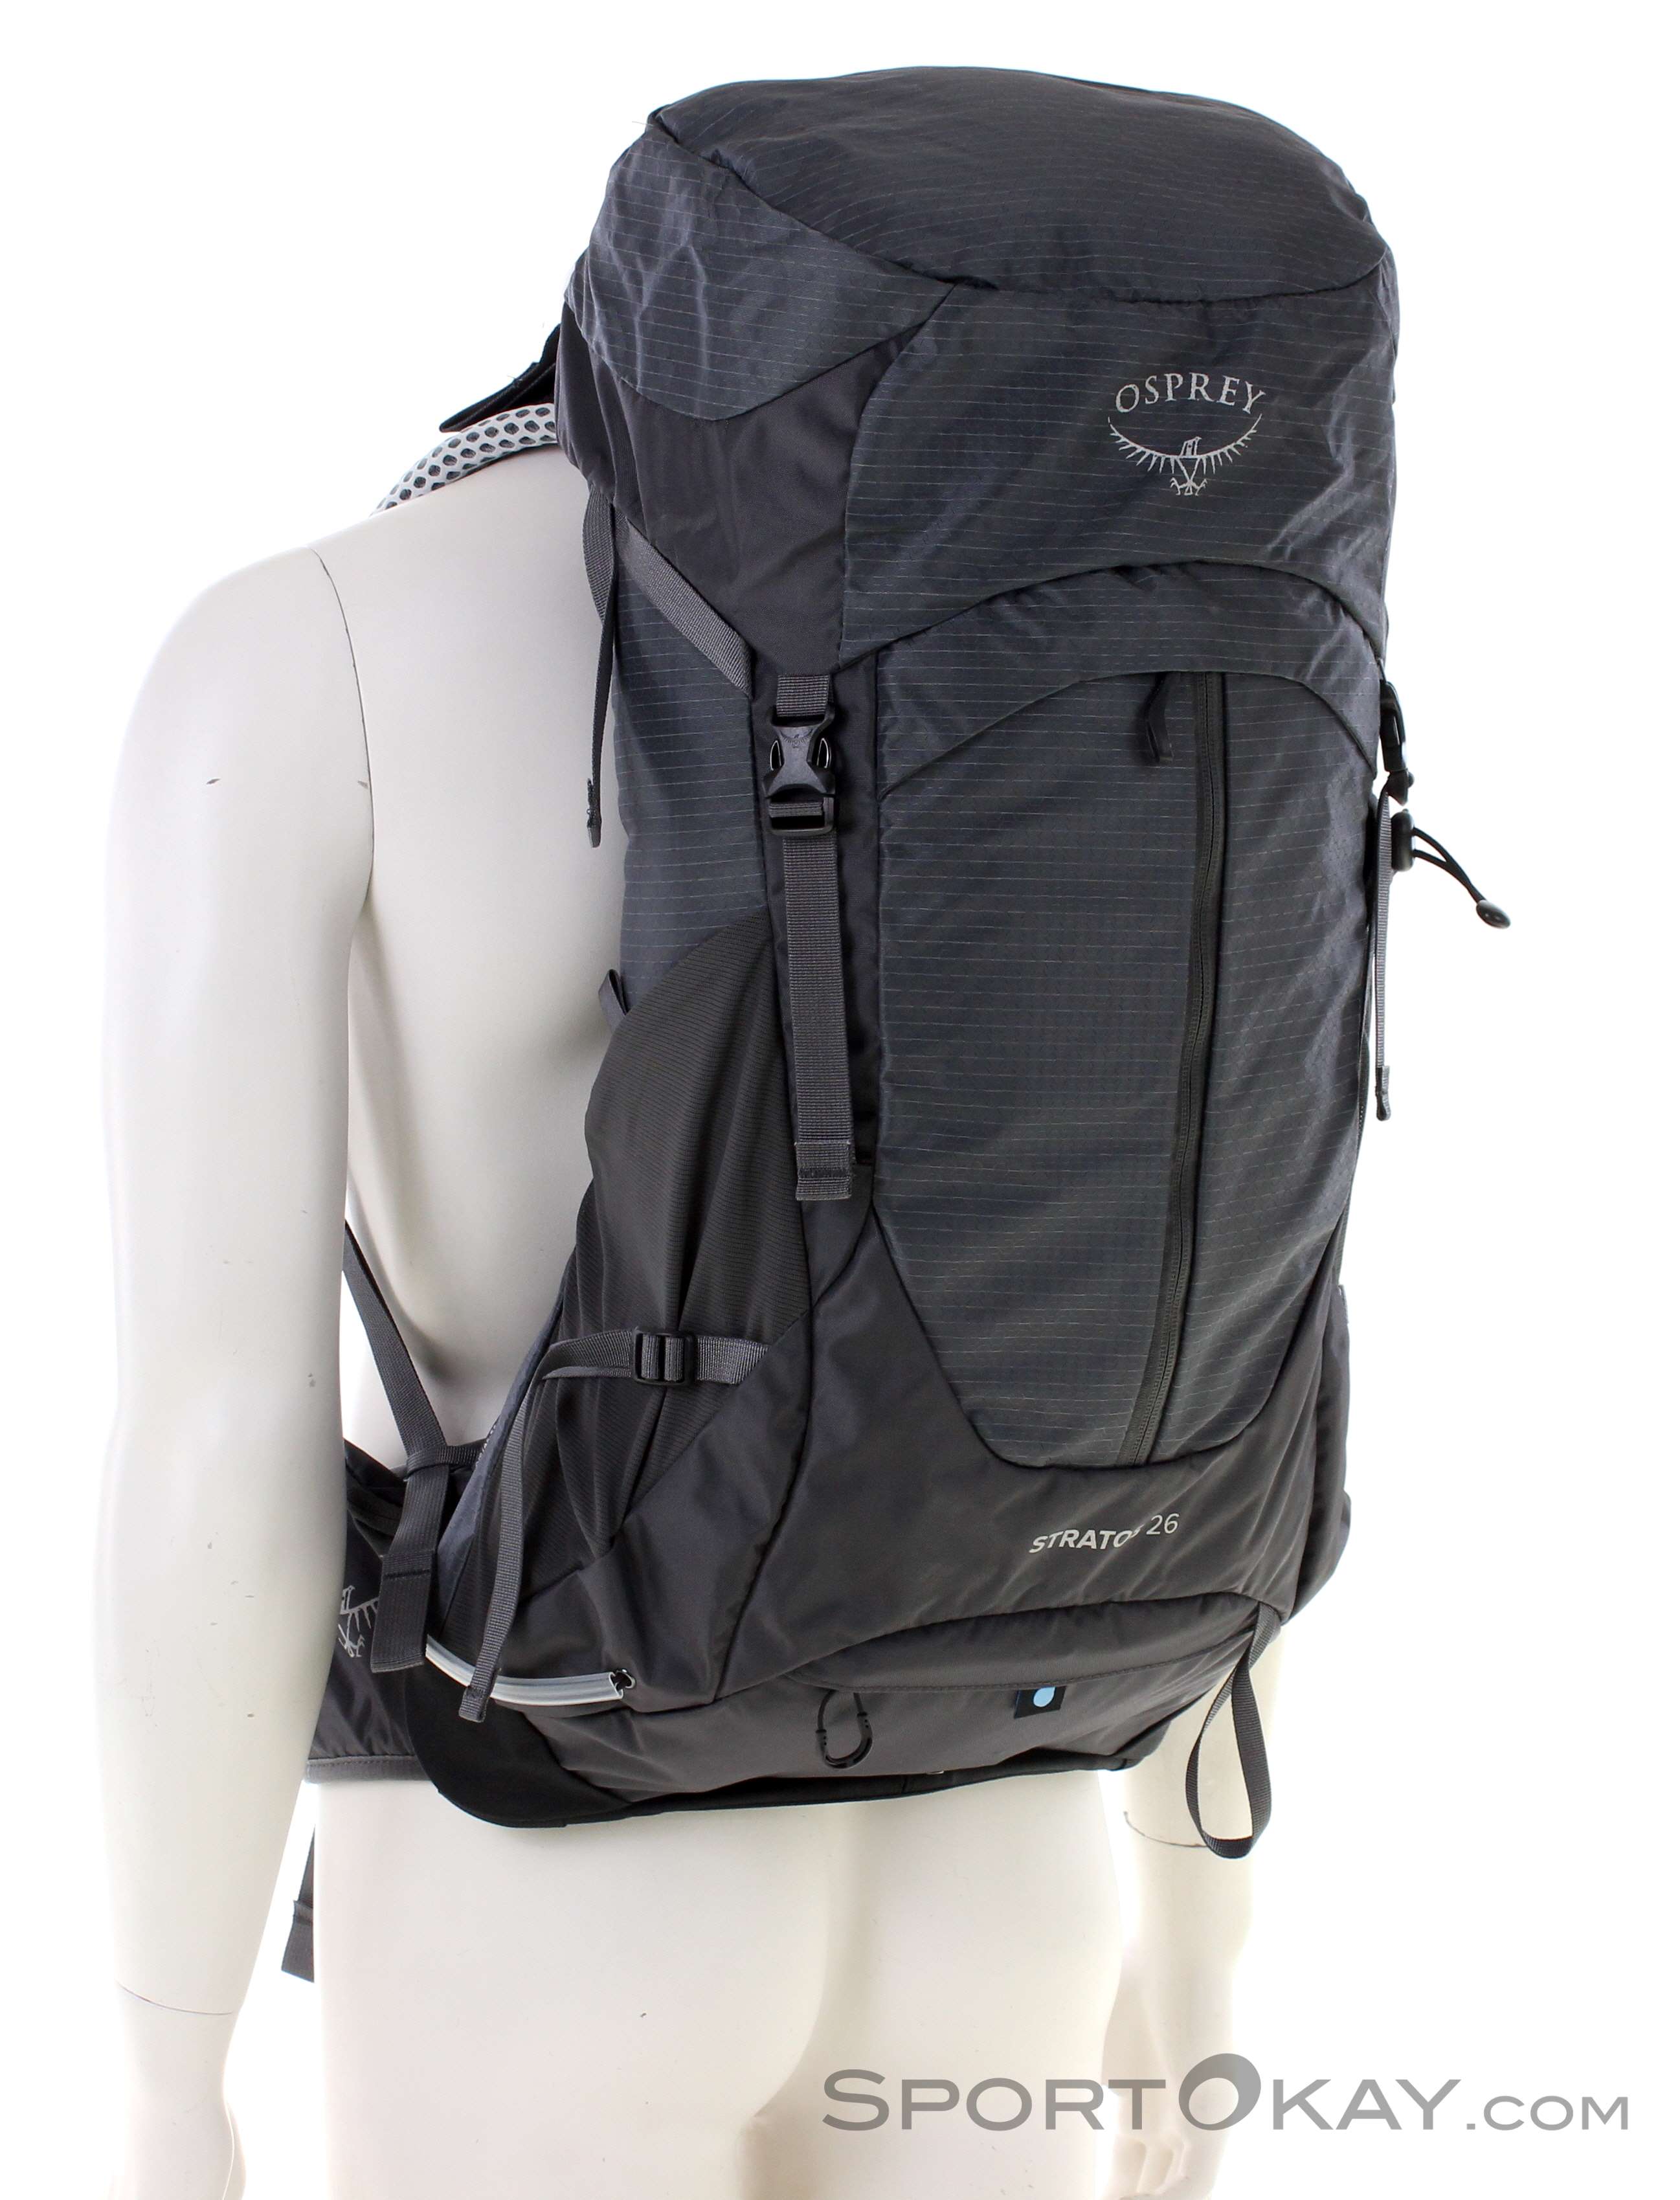 Osprey Stratos 26l Backpack - Backpacks - Backpacks & Headlamps